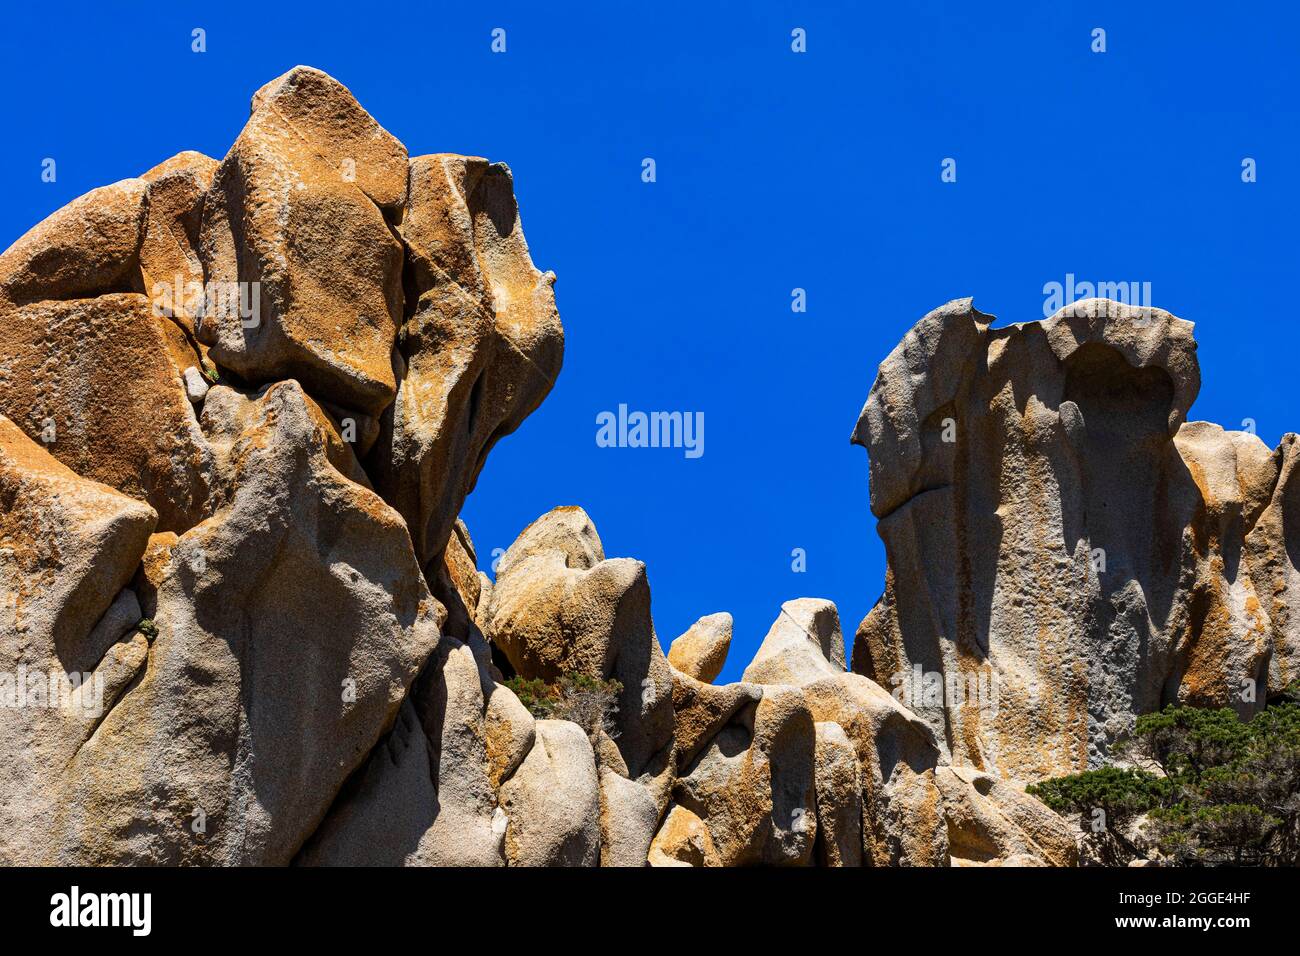 Bizarre rock formations in the Valle della Luna on the rocky coast of Capo Testa near Santa Teresa di Gallura, Sardinia, Italy Stock Photo